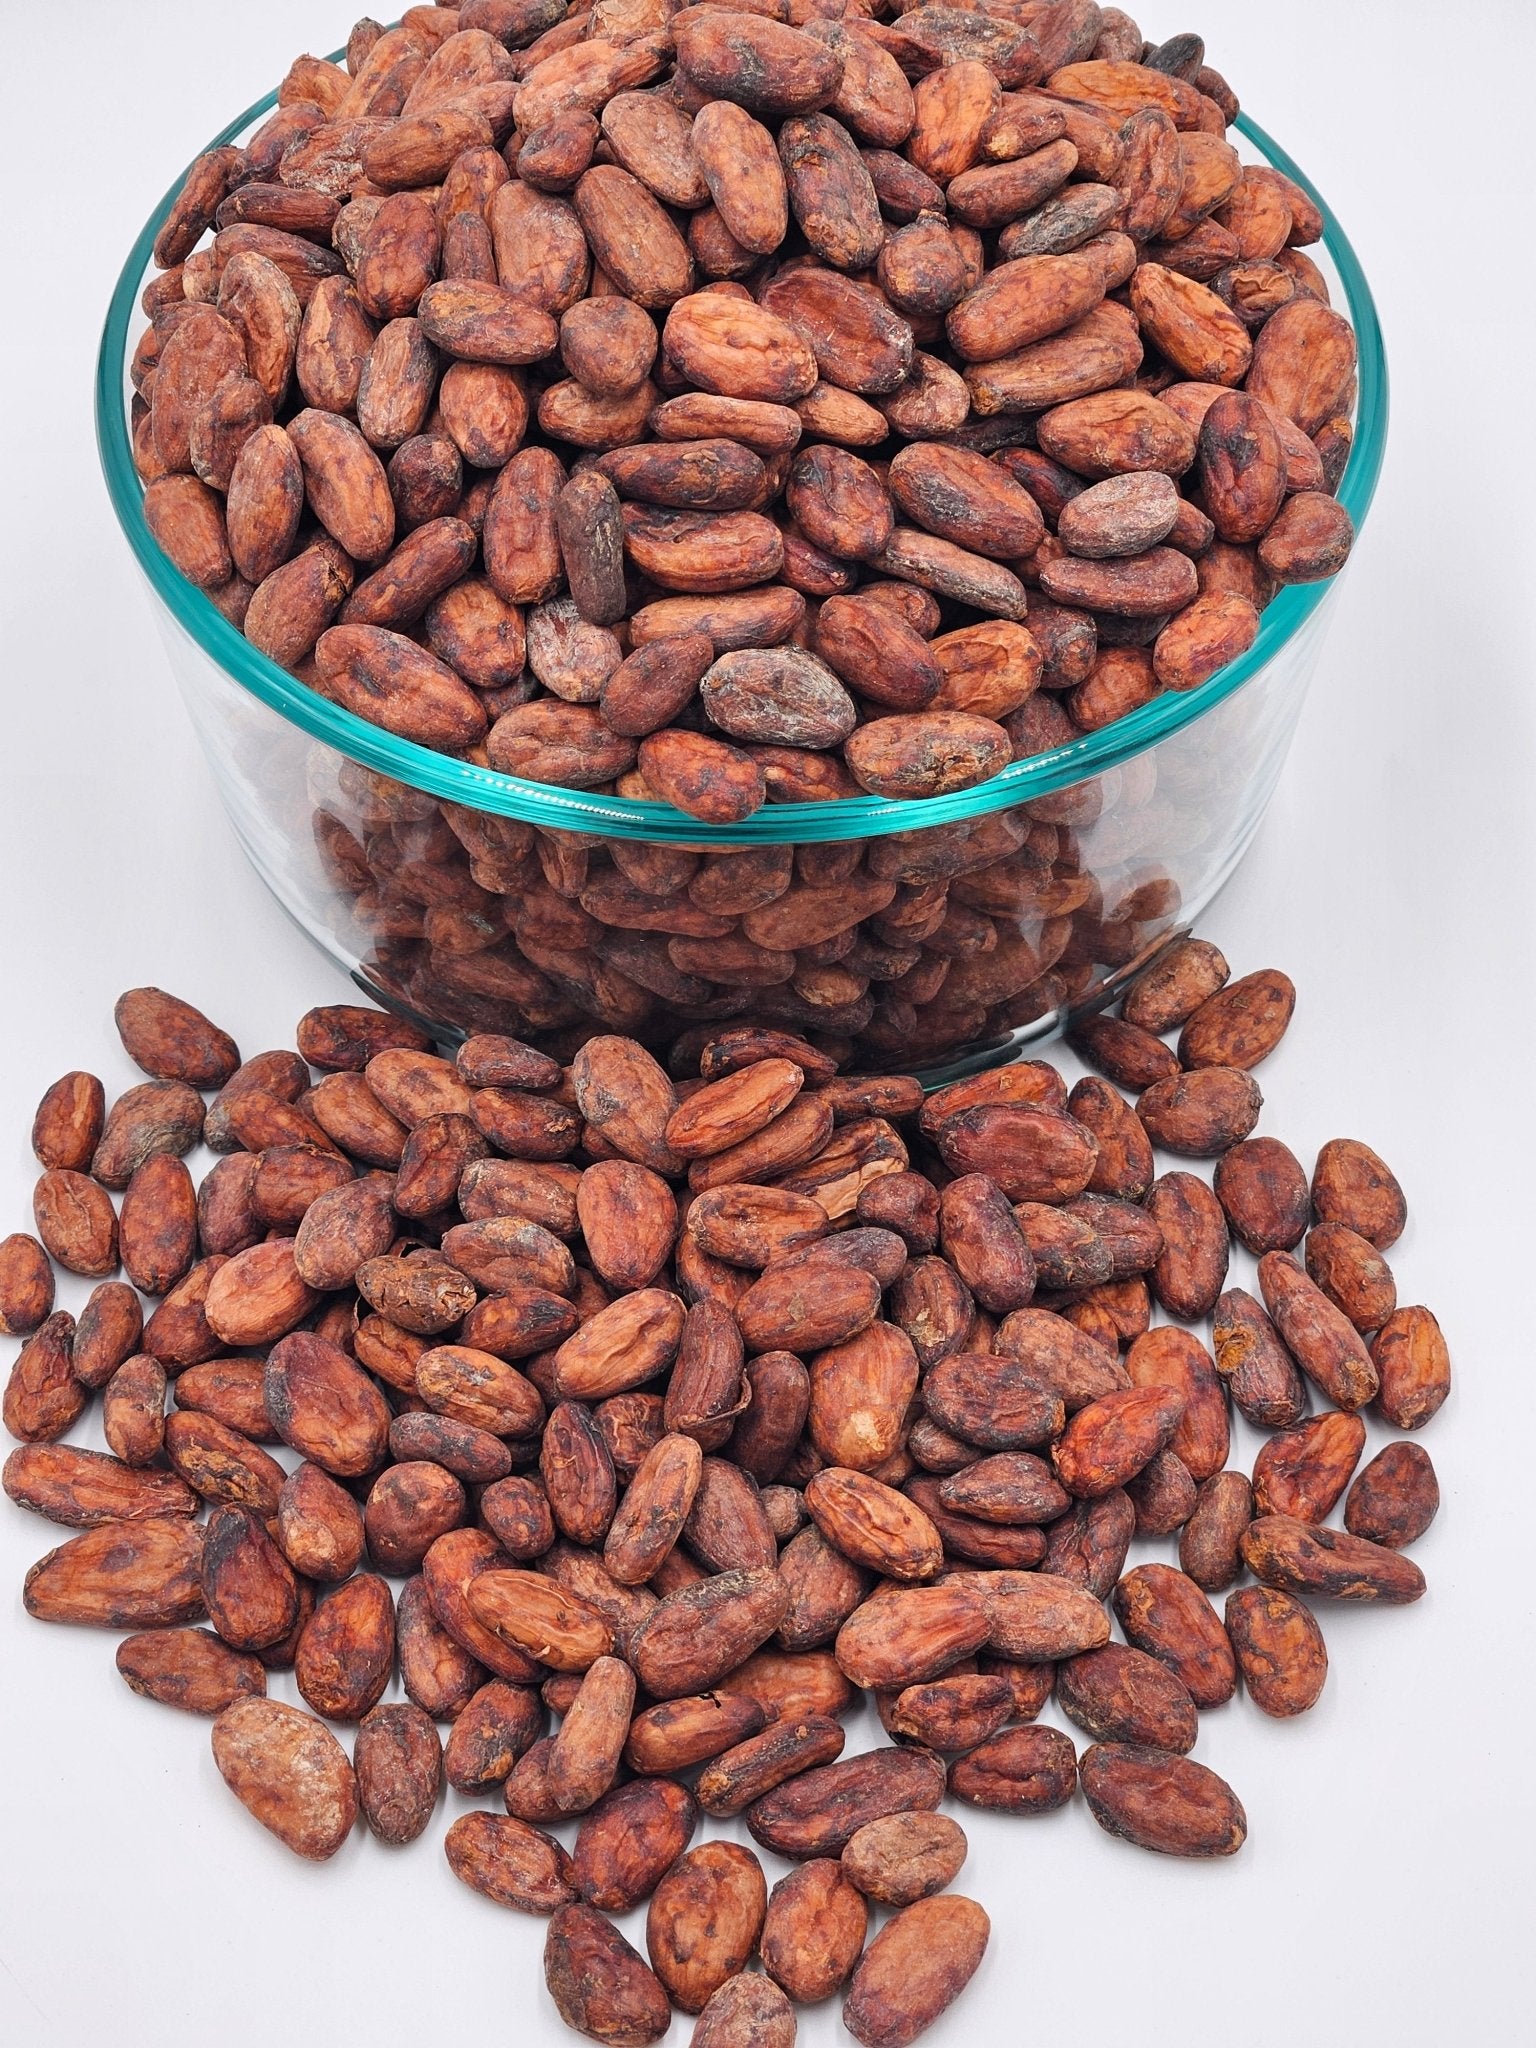 Cacao Beans 8 oz- Criollo - Natural Zing